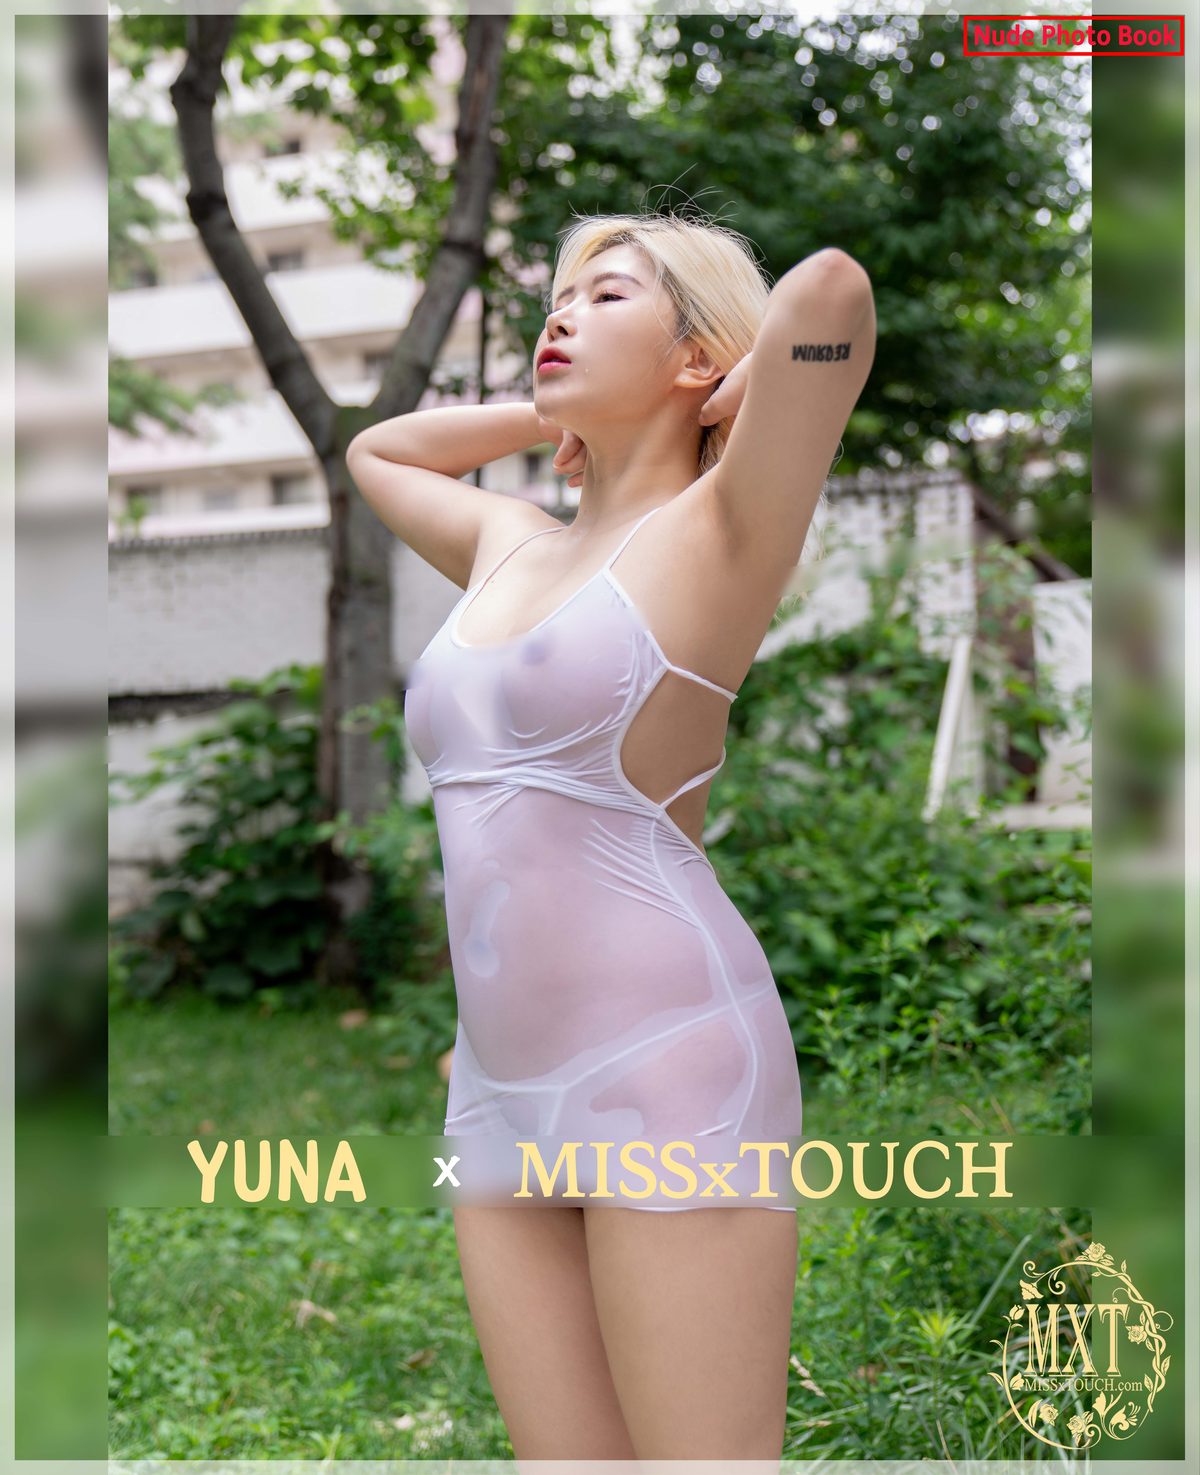 MISS TOUCH Yuna 유나 Vol 49 B 0043 5830147126.jpg